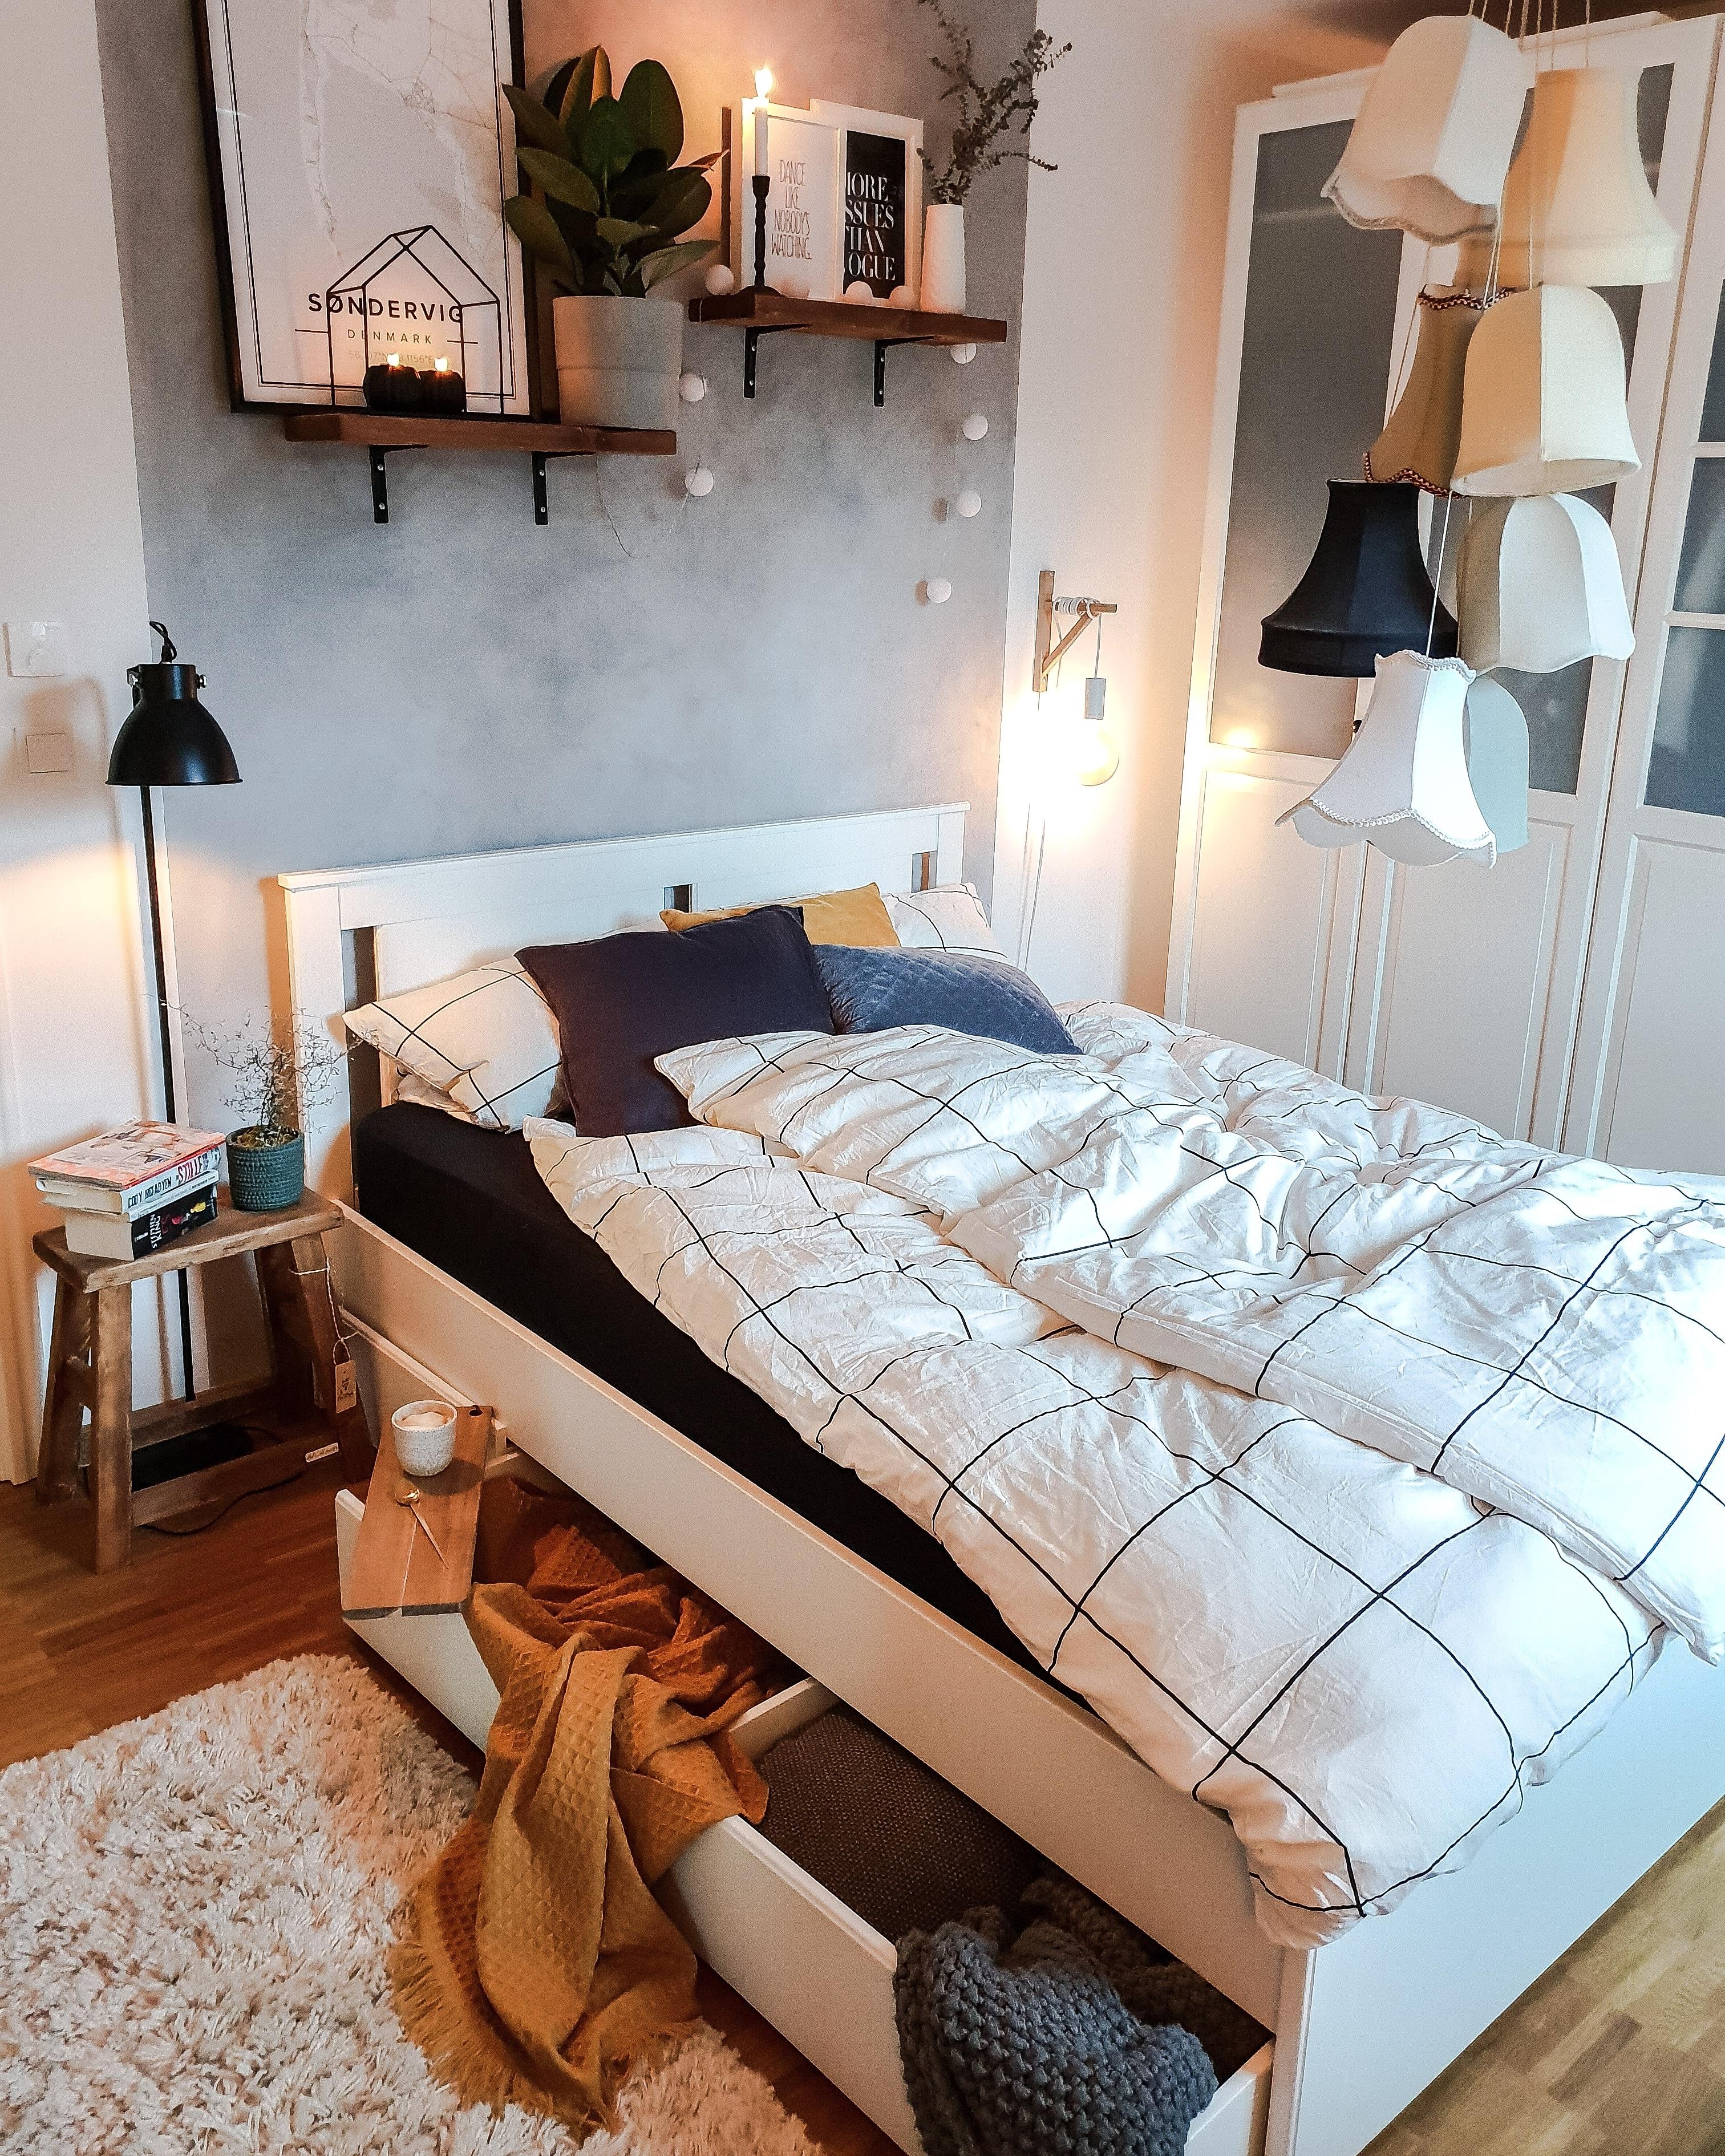 New Bed.
Ein neues Bett durfte einziehen. 

#meinikea #bett #bed #interior #interiør #skandinavianhome #living